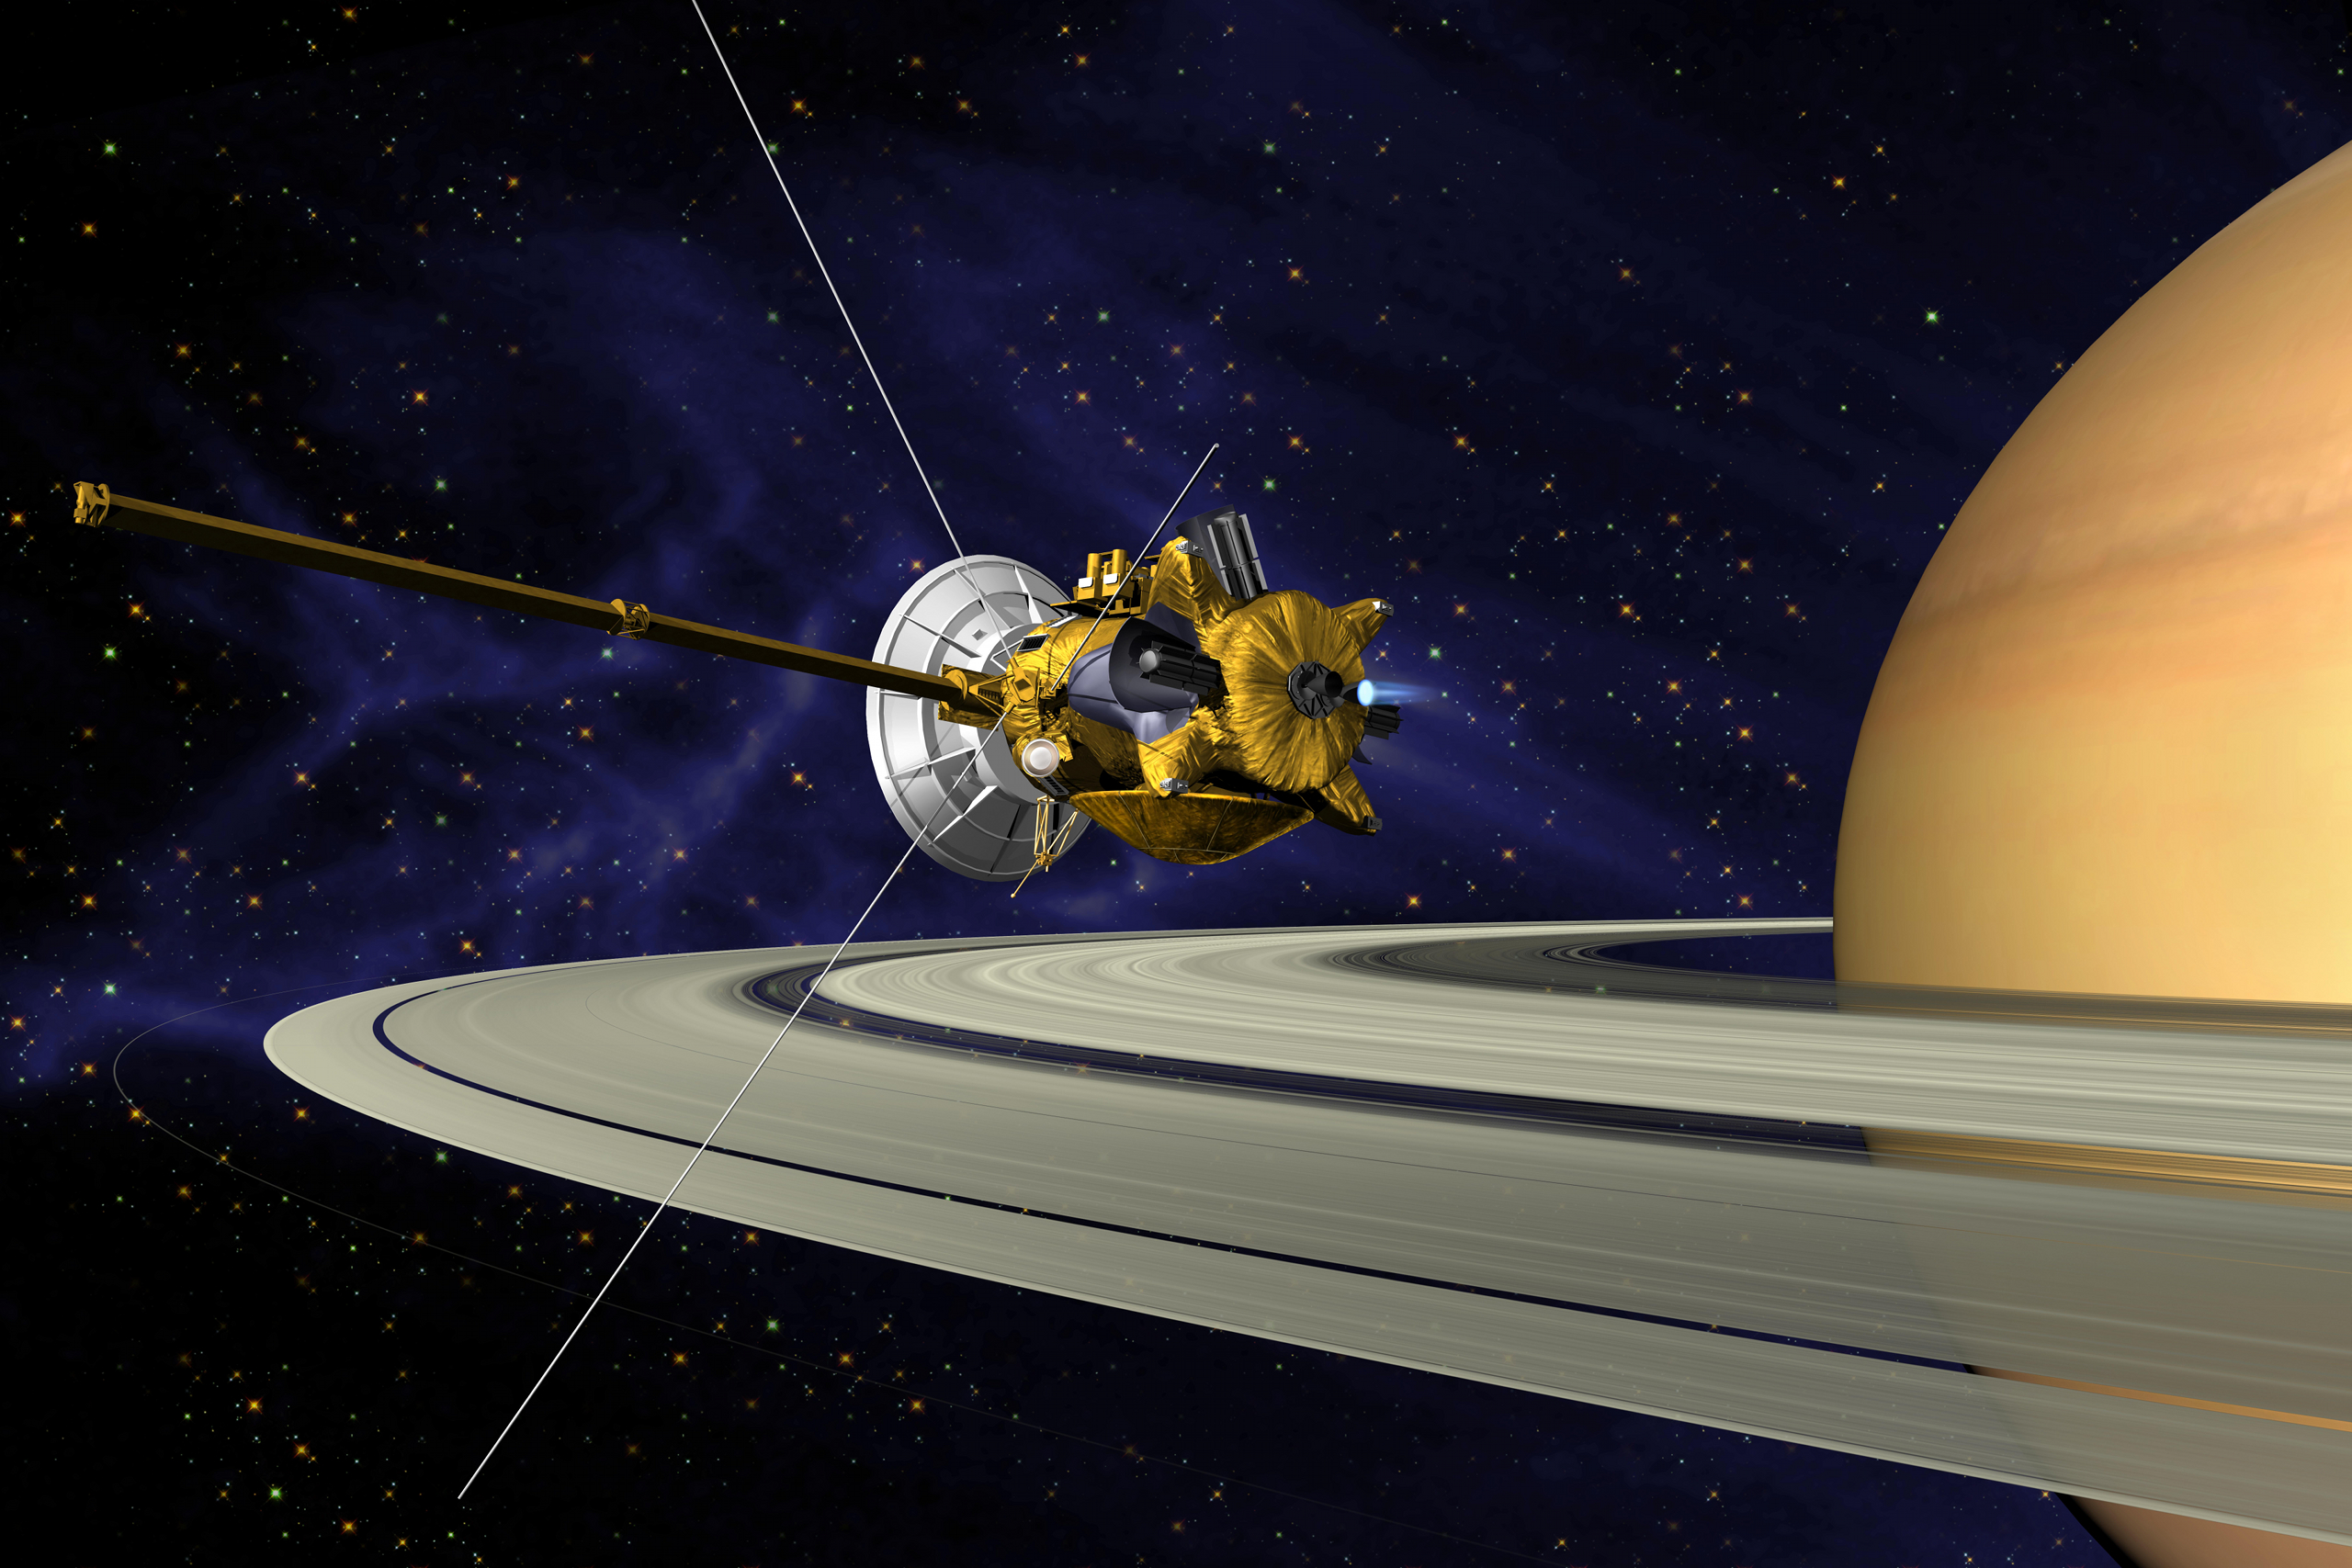 Exclusivité : la sonde Cassini se confie à Futura. © Nasa, JPL